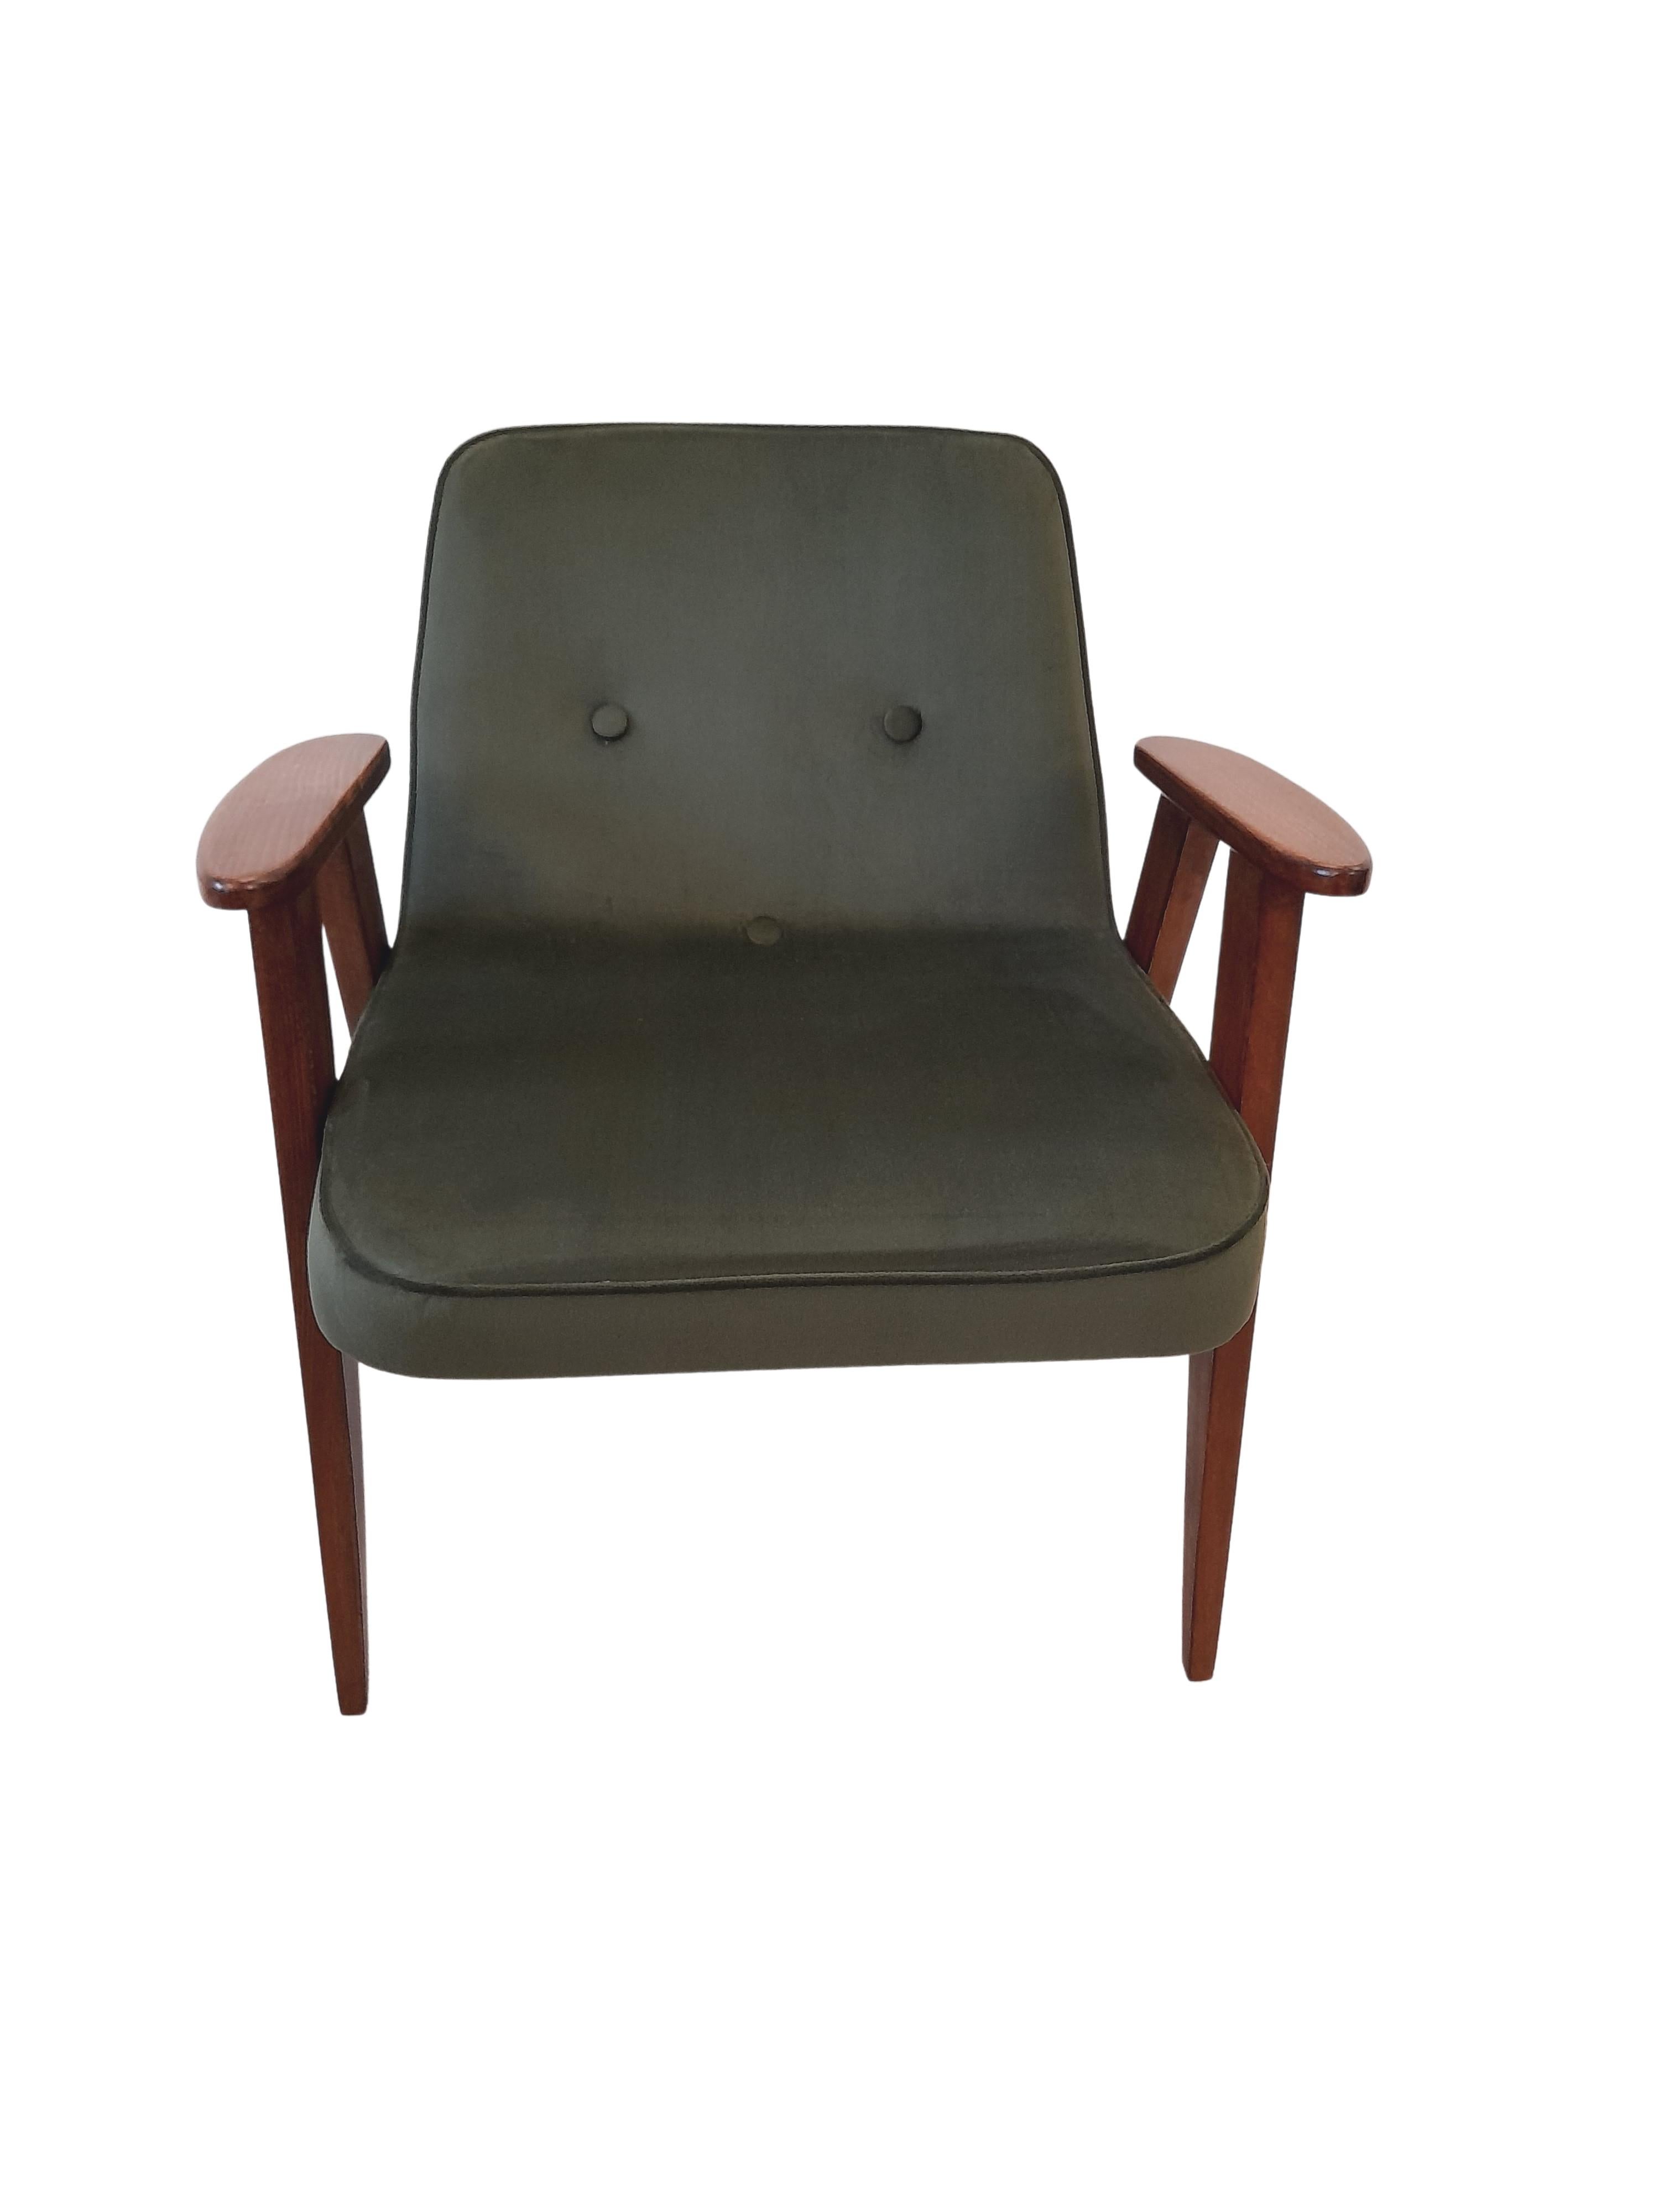 Sessel aus grünem Samt, Modell 366, von Józef Chierowski, 1960er Jahre (Moderne der Mitte des Jahrhunderts)